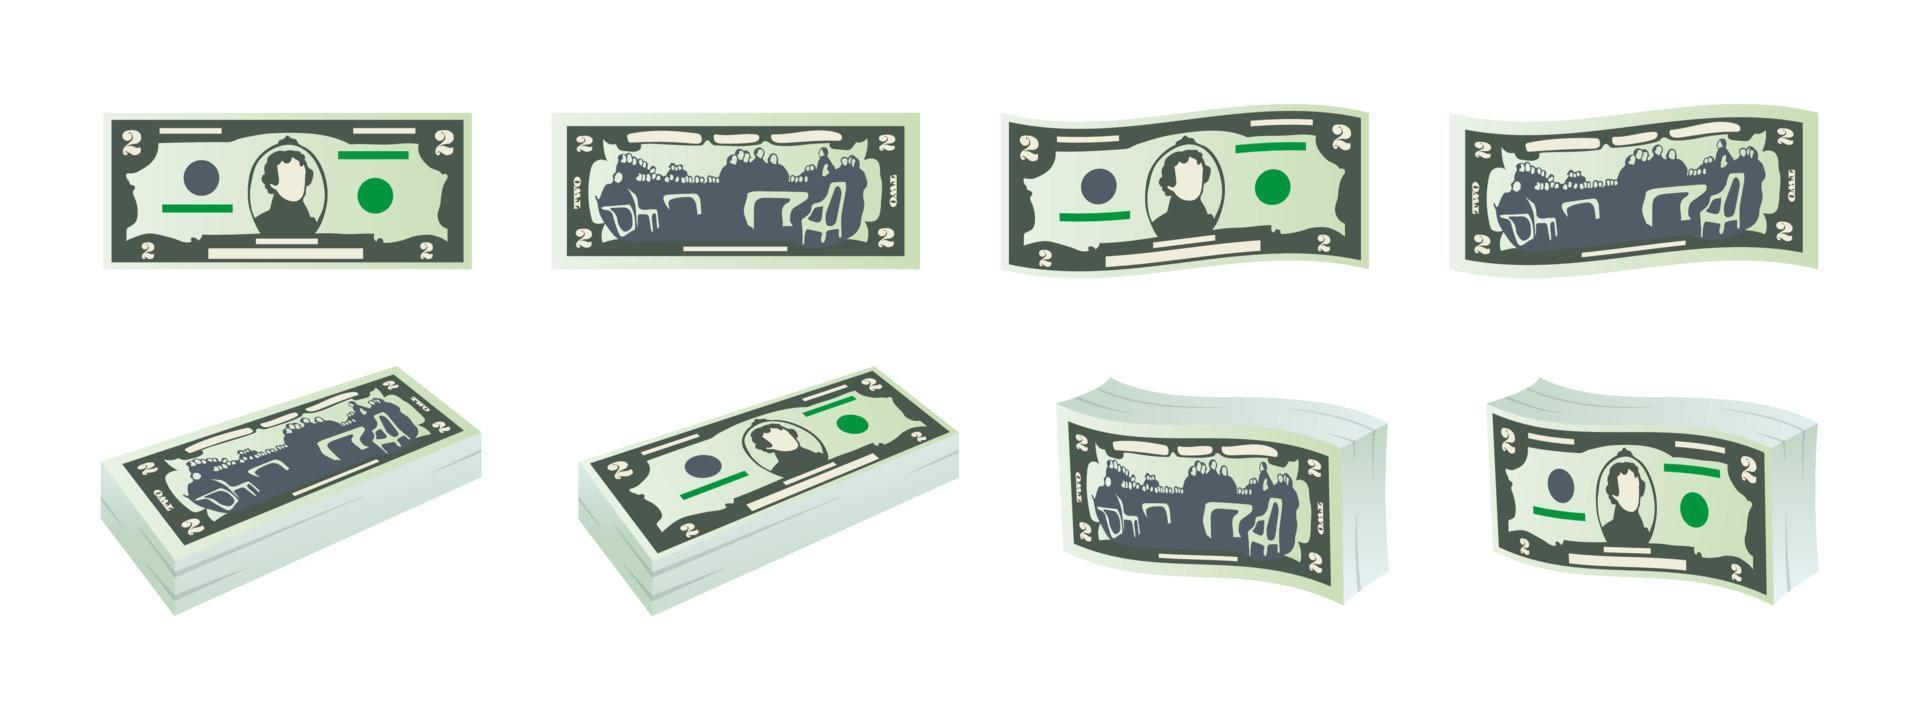 geld pictogrammen. twee dollar rekeningen. dollars bankbiljetten van voorkant en omgekeerde kant. dollar bankbiljetten set. vector illustratie